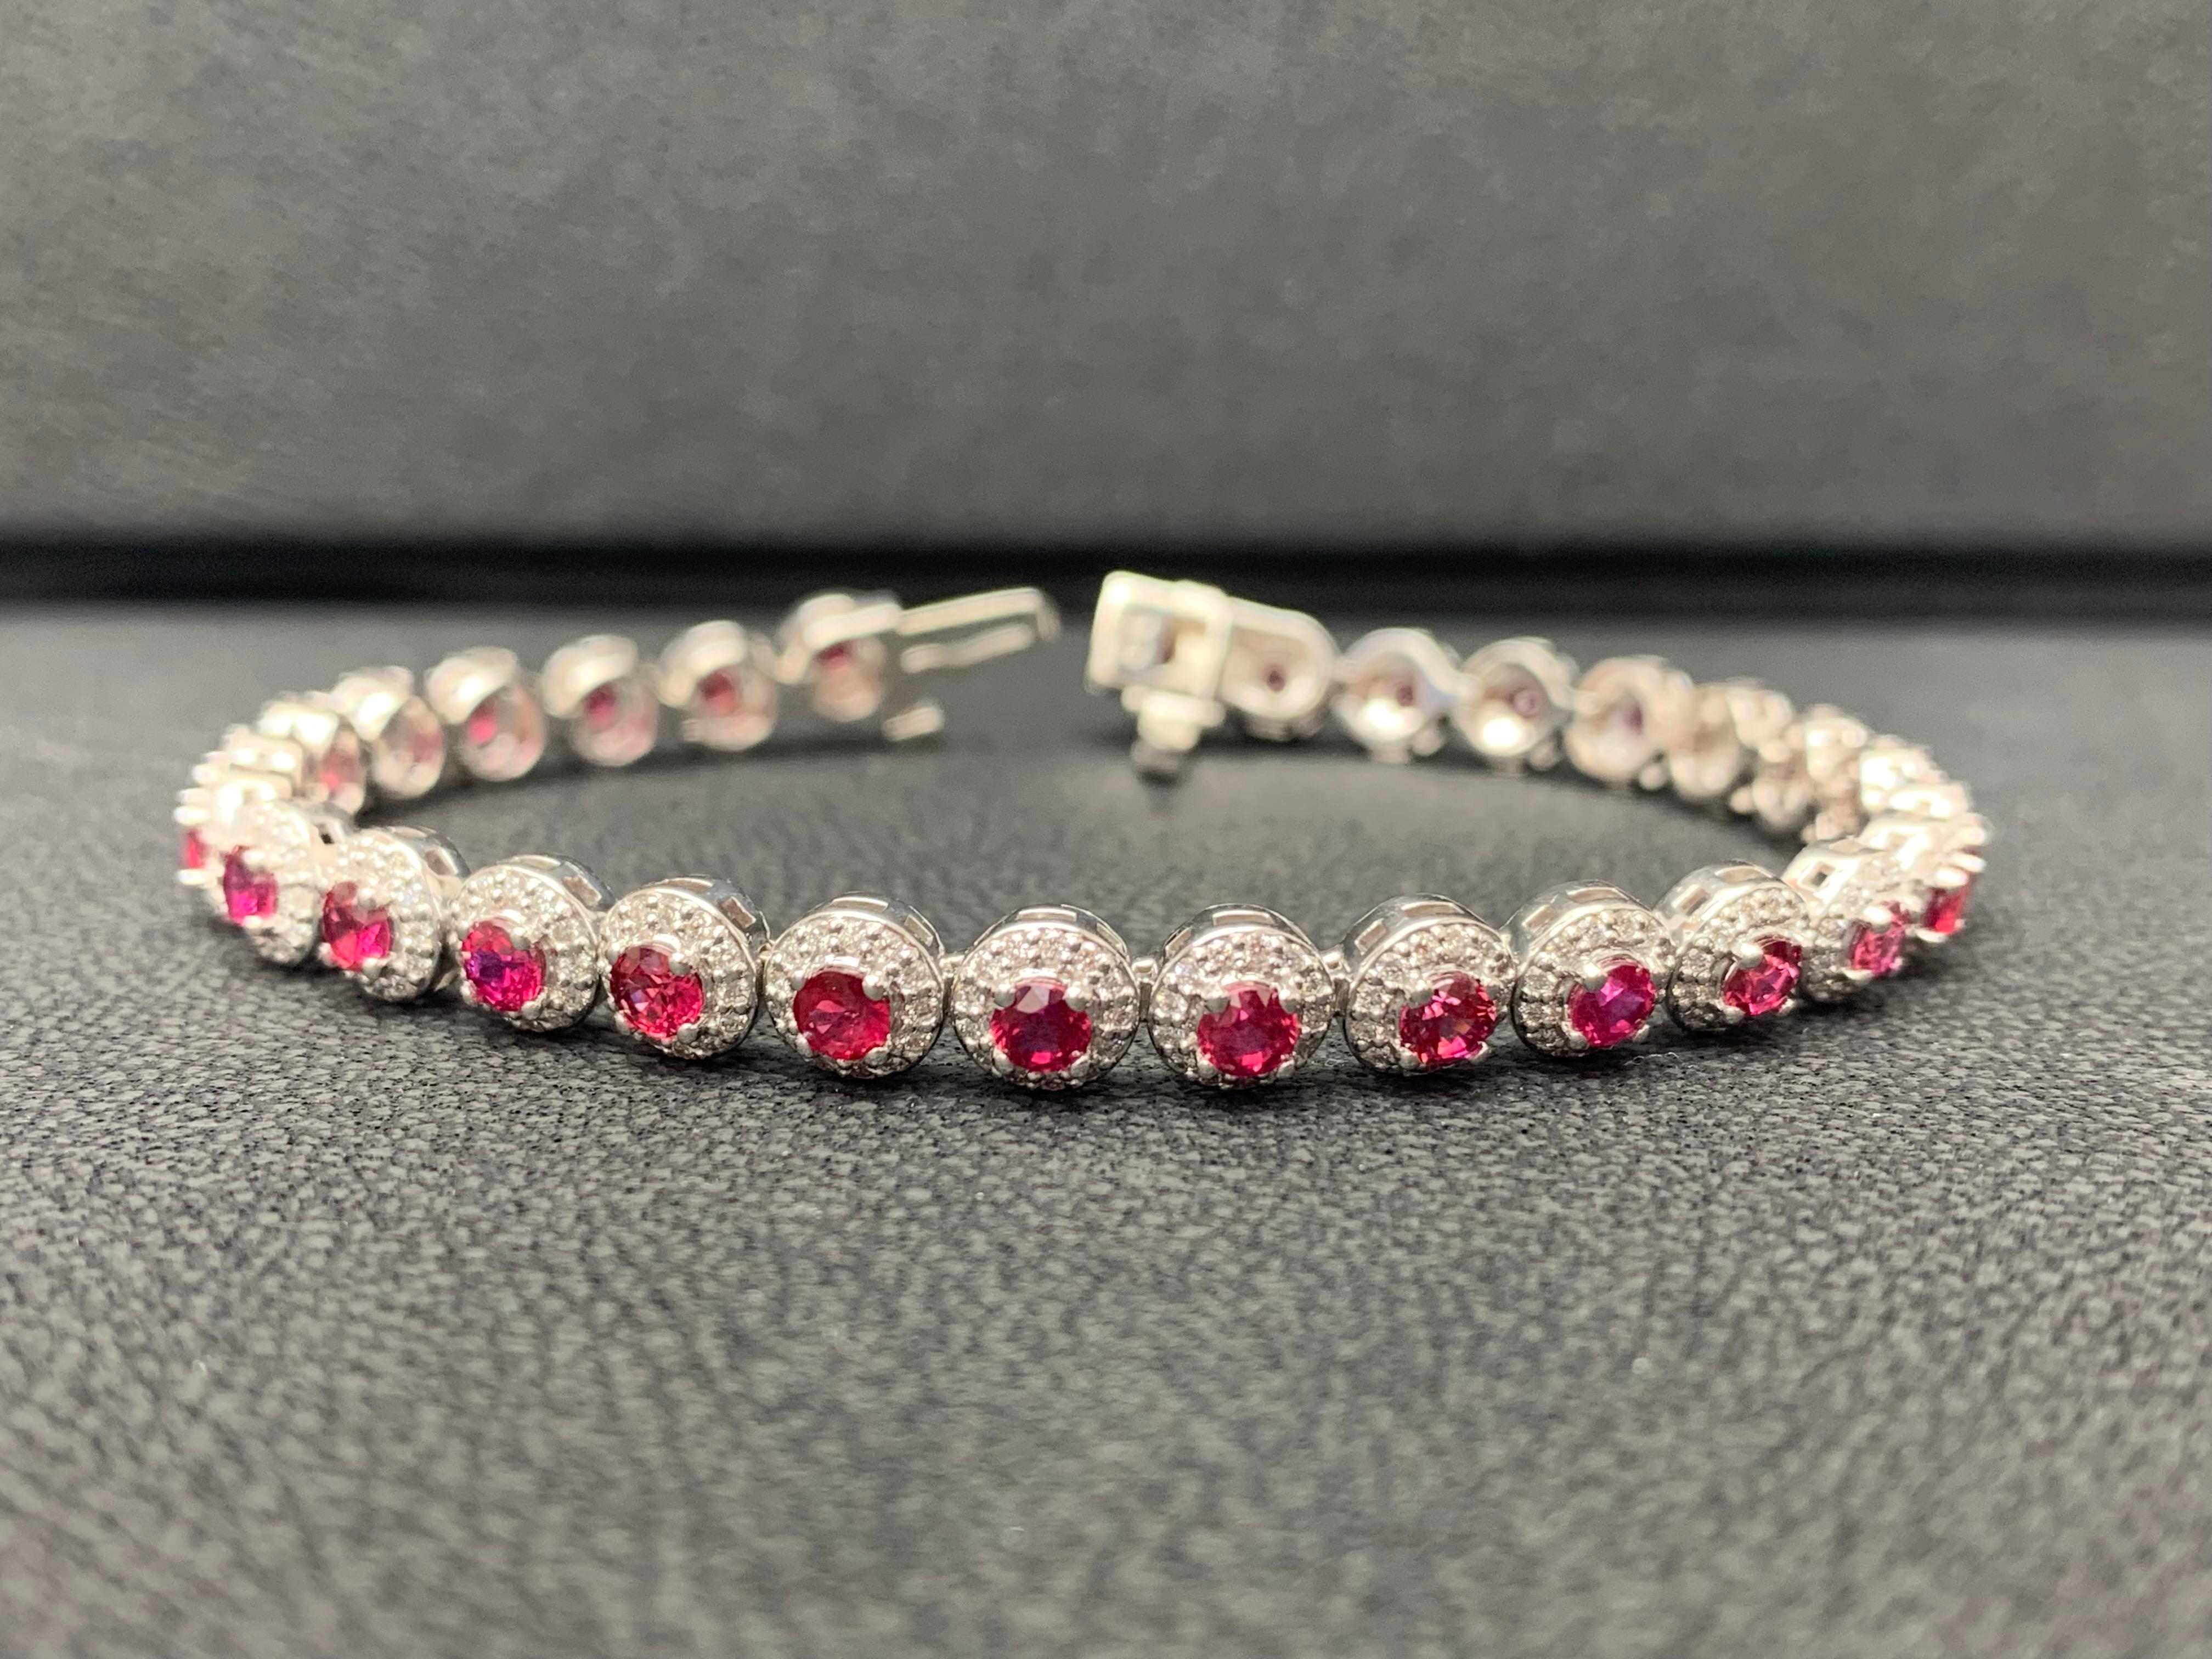 Ajoutez de la couleur à votre style avec ce magnifique bracelet en rubis. 29 rubis rouges de taille ronde entourés d'une rangée de diamants ronds étincelants dans une monture en halo. Les rubis et les diamants pèsent respectivement 4,62 carats et